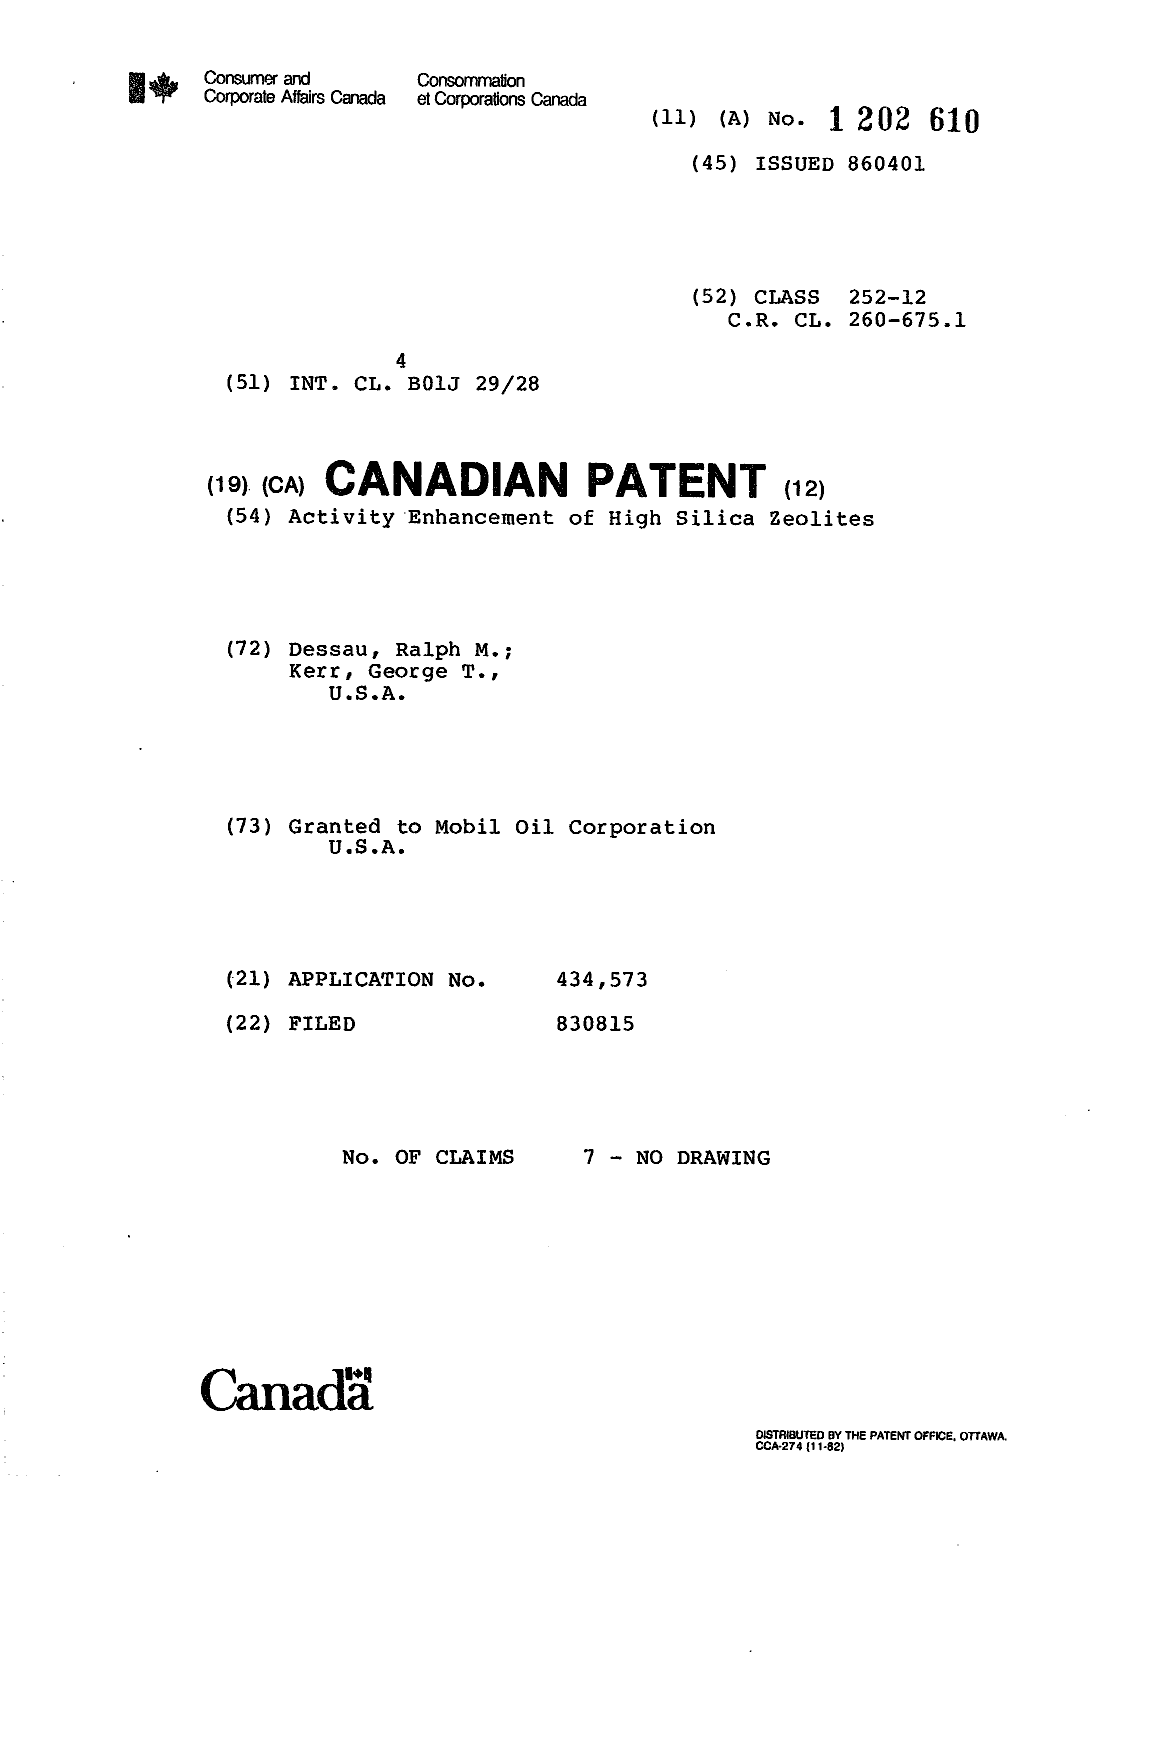 Document de brevet canadien 1202610. Page couverture 19930624. Image 1 de 1